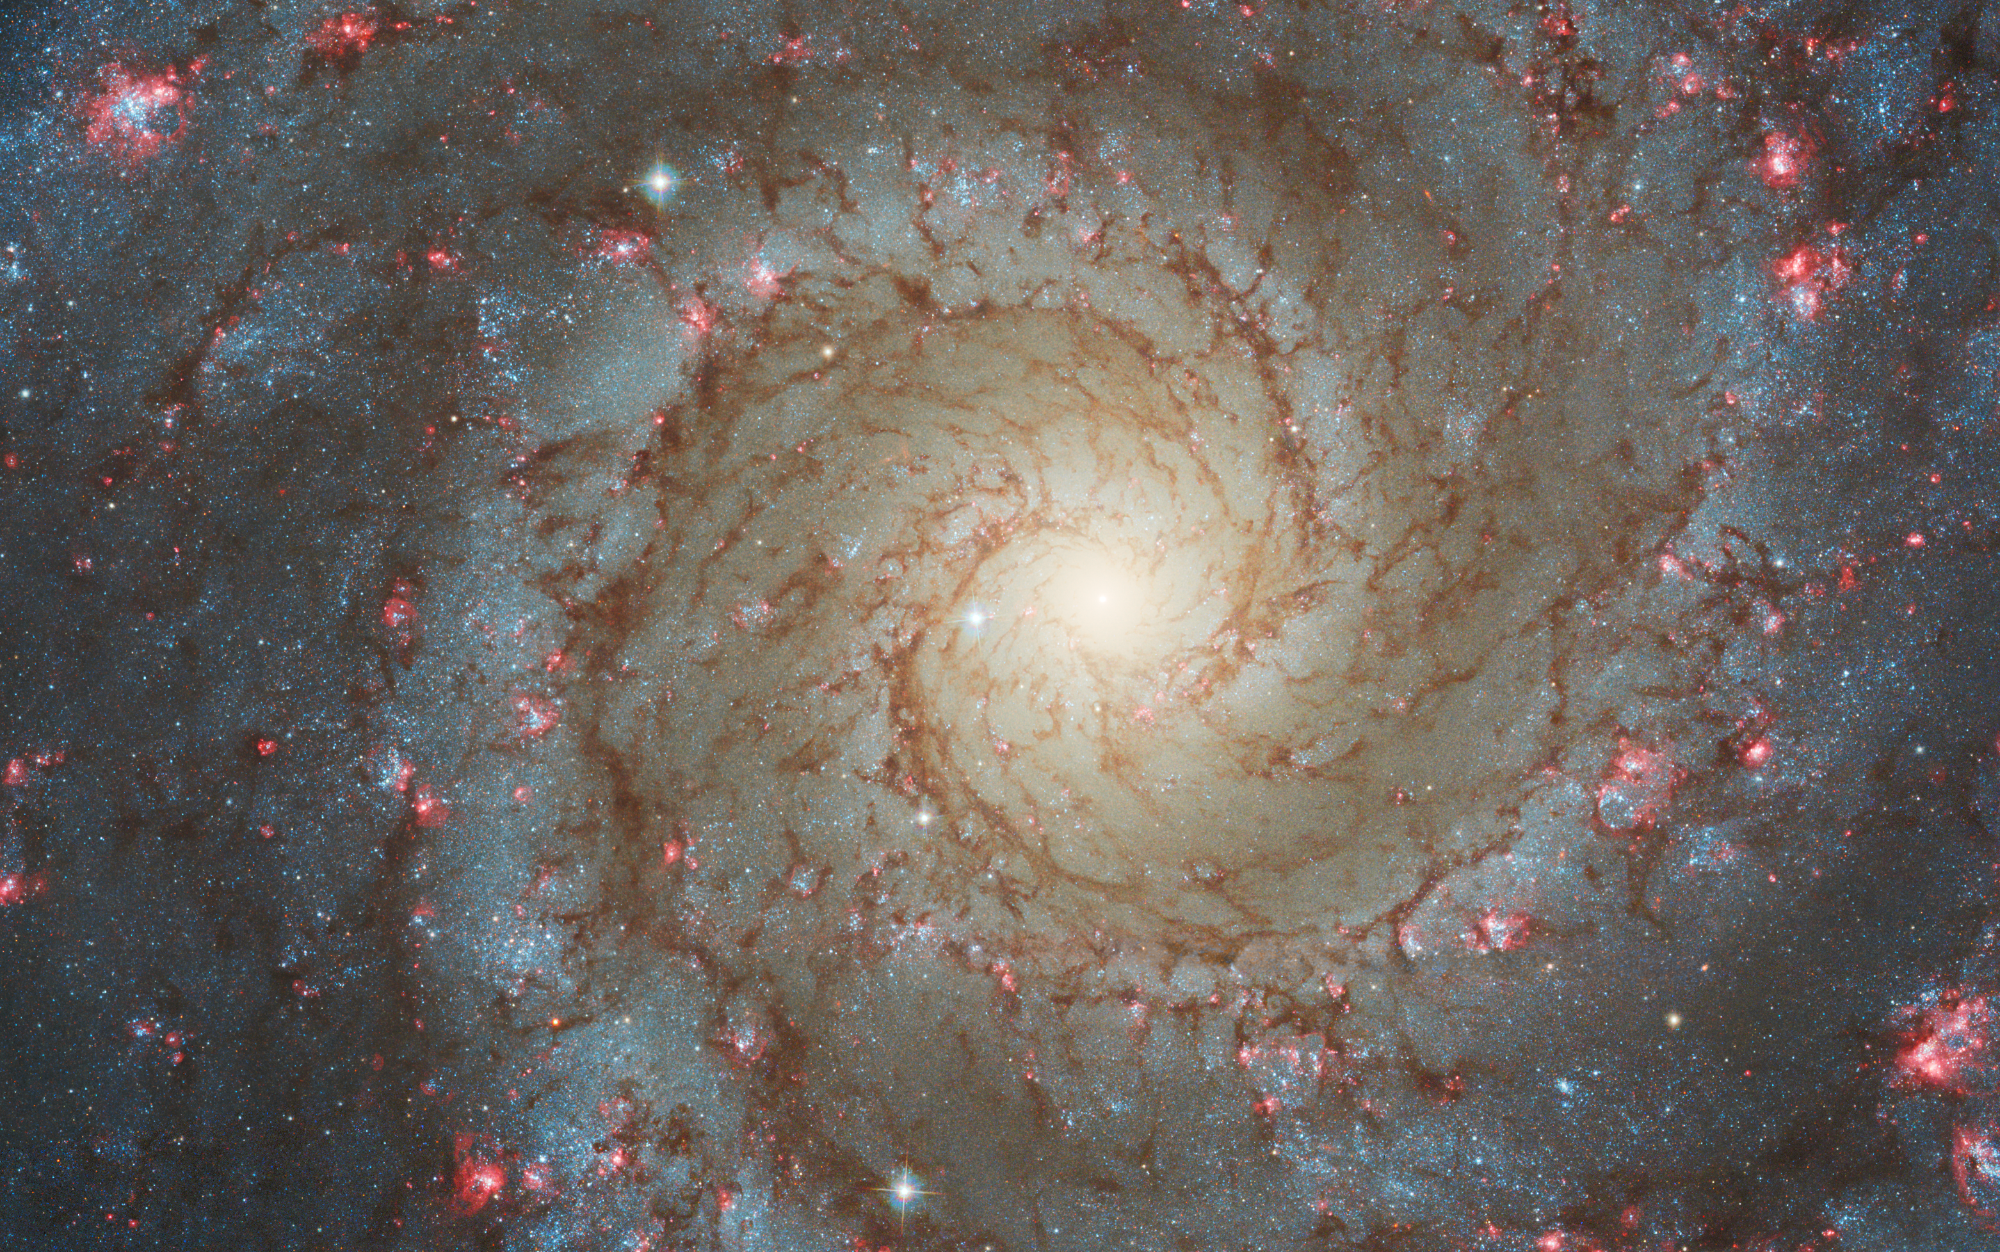 La imagen captada por el telescopio espacial Hubble de NGC 628 presenta una vista frontal detallada de una galaxia espiral densamente poblada, con su región central dominada por una neblina amarilla clara que abarca aproximadamente una cuarta parte de la composición.